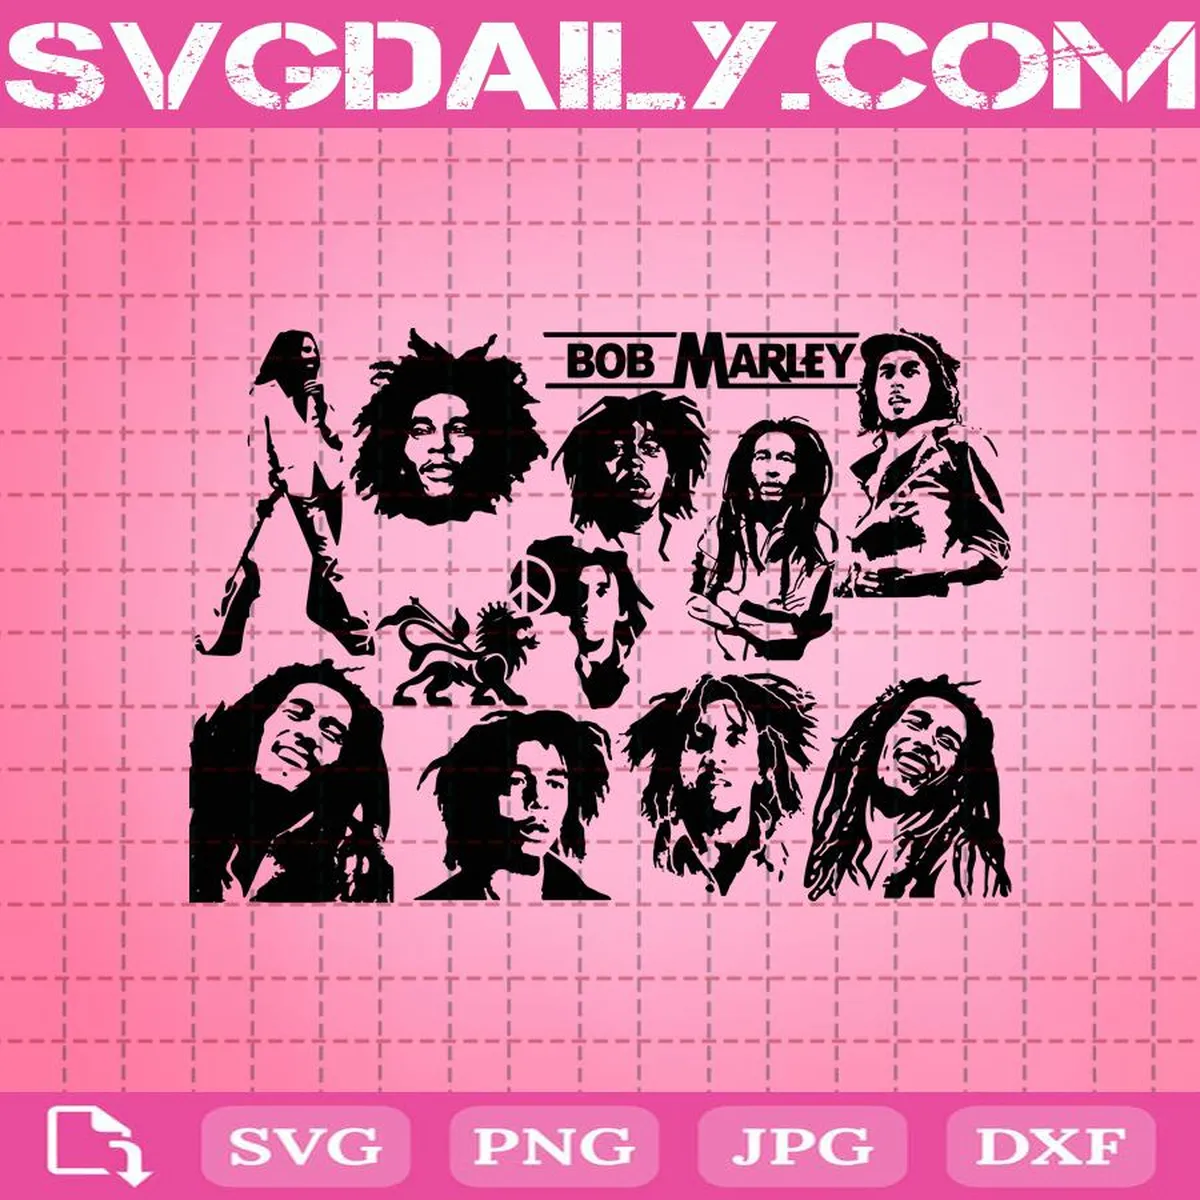 Bob Marley Svg Bundle, Bob Marley Svg, Singer Svg, Music Svg, Svg Png Dxf Eps AI Instant Download